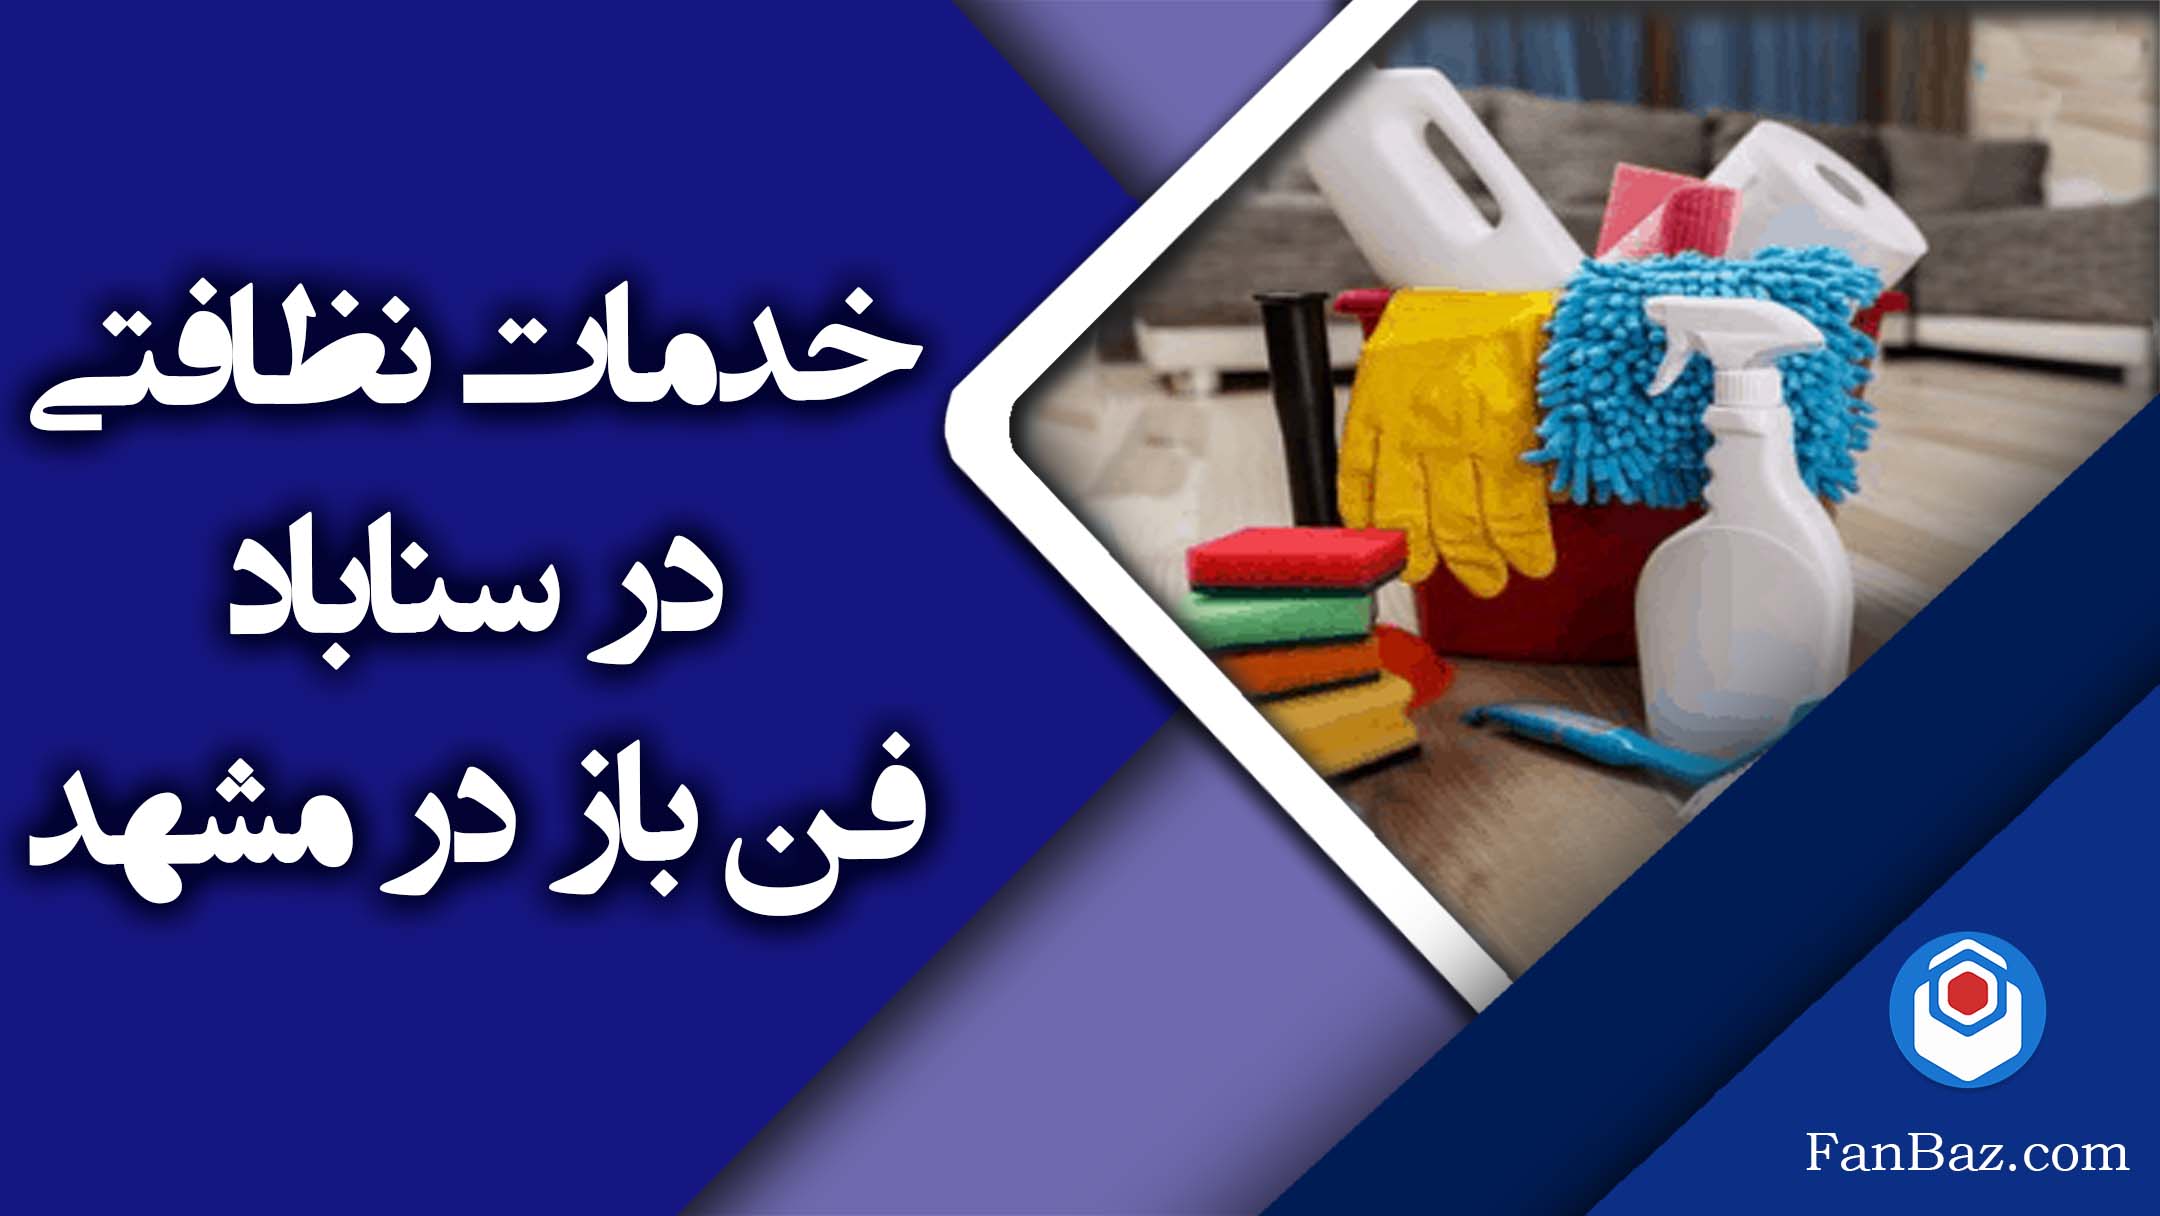 خدمات نظافتی آنلاین فن بازدر سناباد مشهد